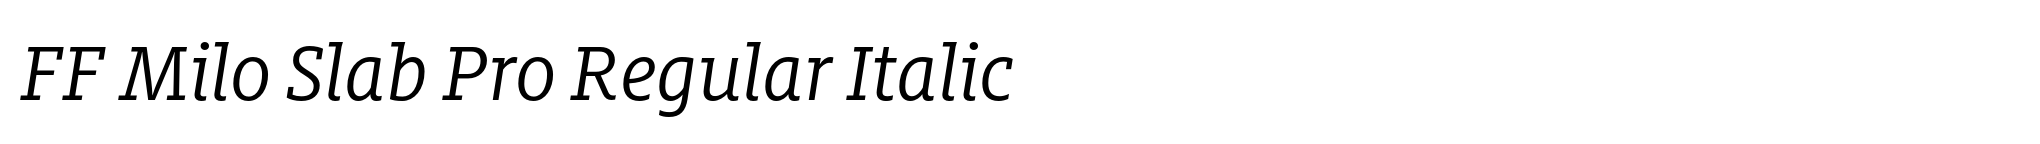 FF Milo Slab Pro Regular Italic image